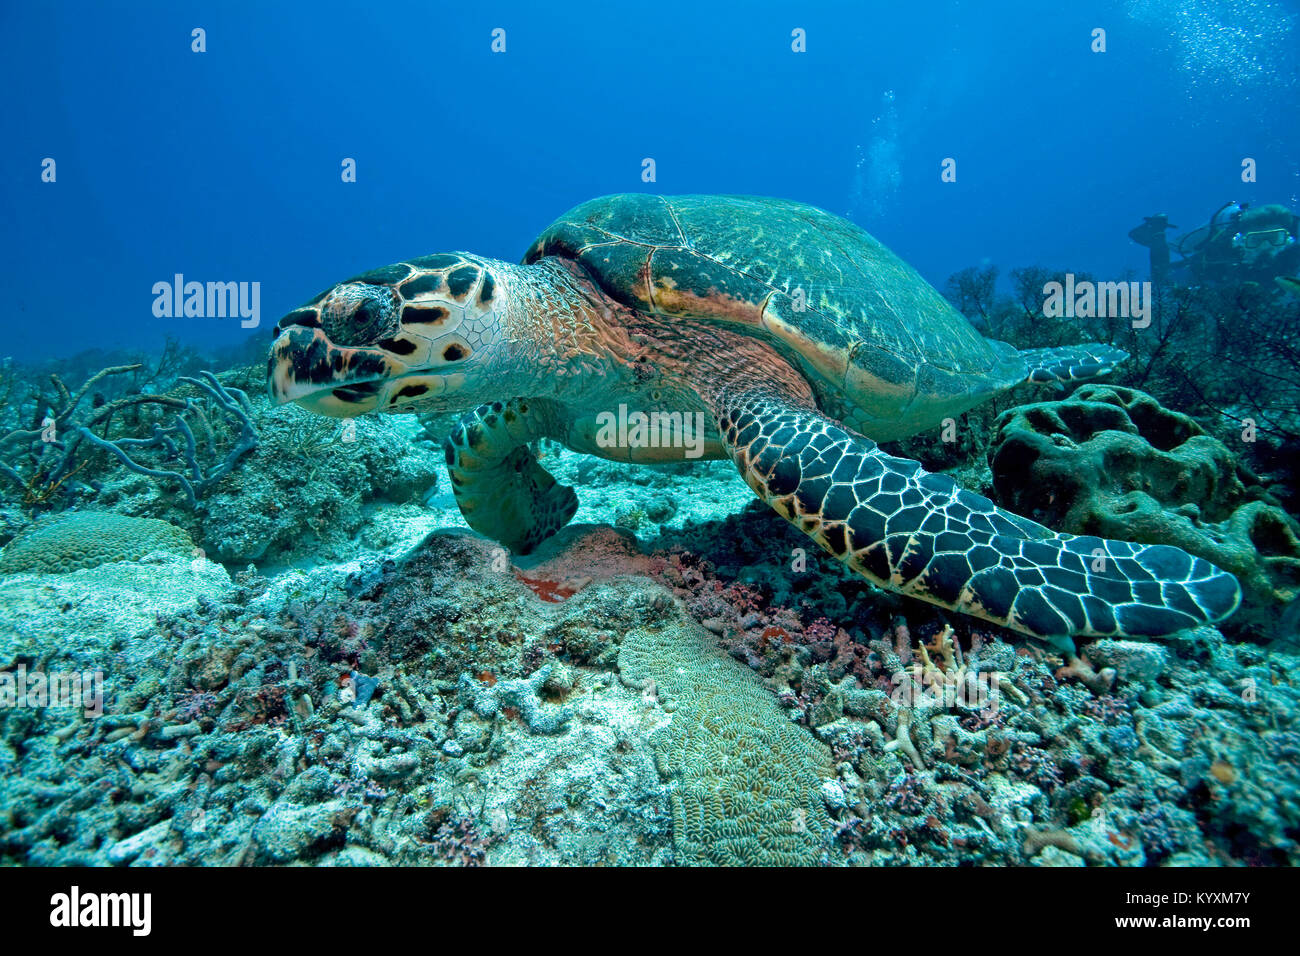 La tortuga carey (Eretmochelys imbricata), Playa del Carmen, la península de Yucatán, México, el Caribe Foto de stock